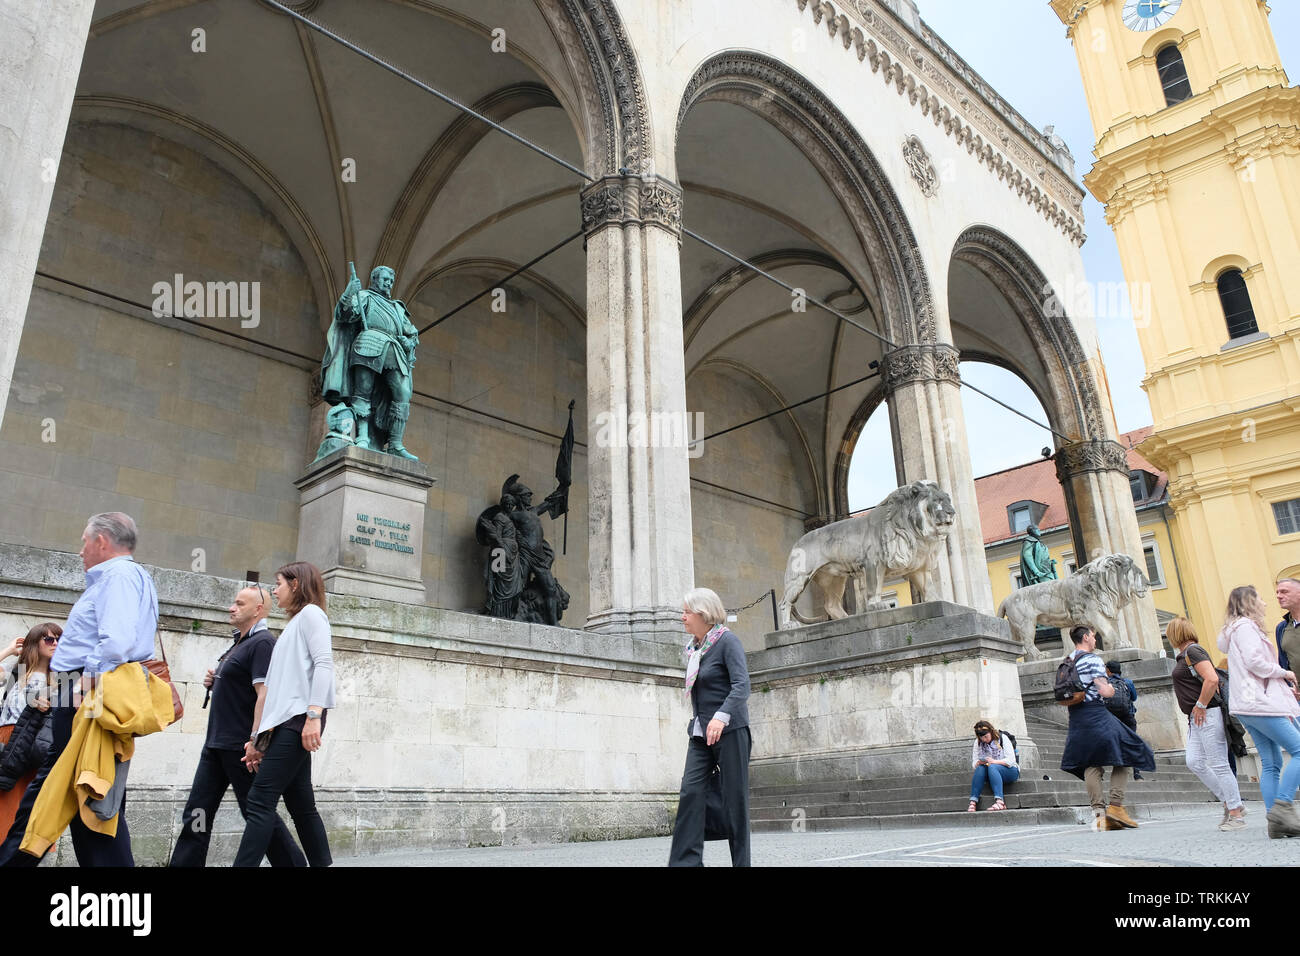 Mai 2019 - La loggia Feldherrnhalle est une œuvre monumentale sur l'Odeonsplatz à Munich, sur le modèle de la Loggia dei Lanzi à Florence, Munich, Allemagne Banque D'Images